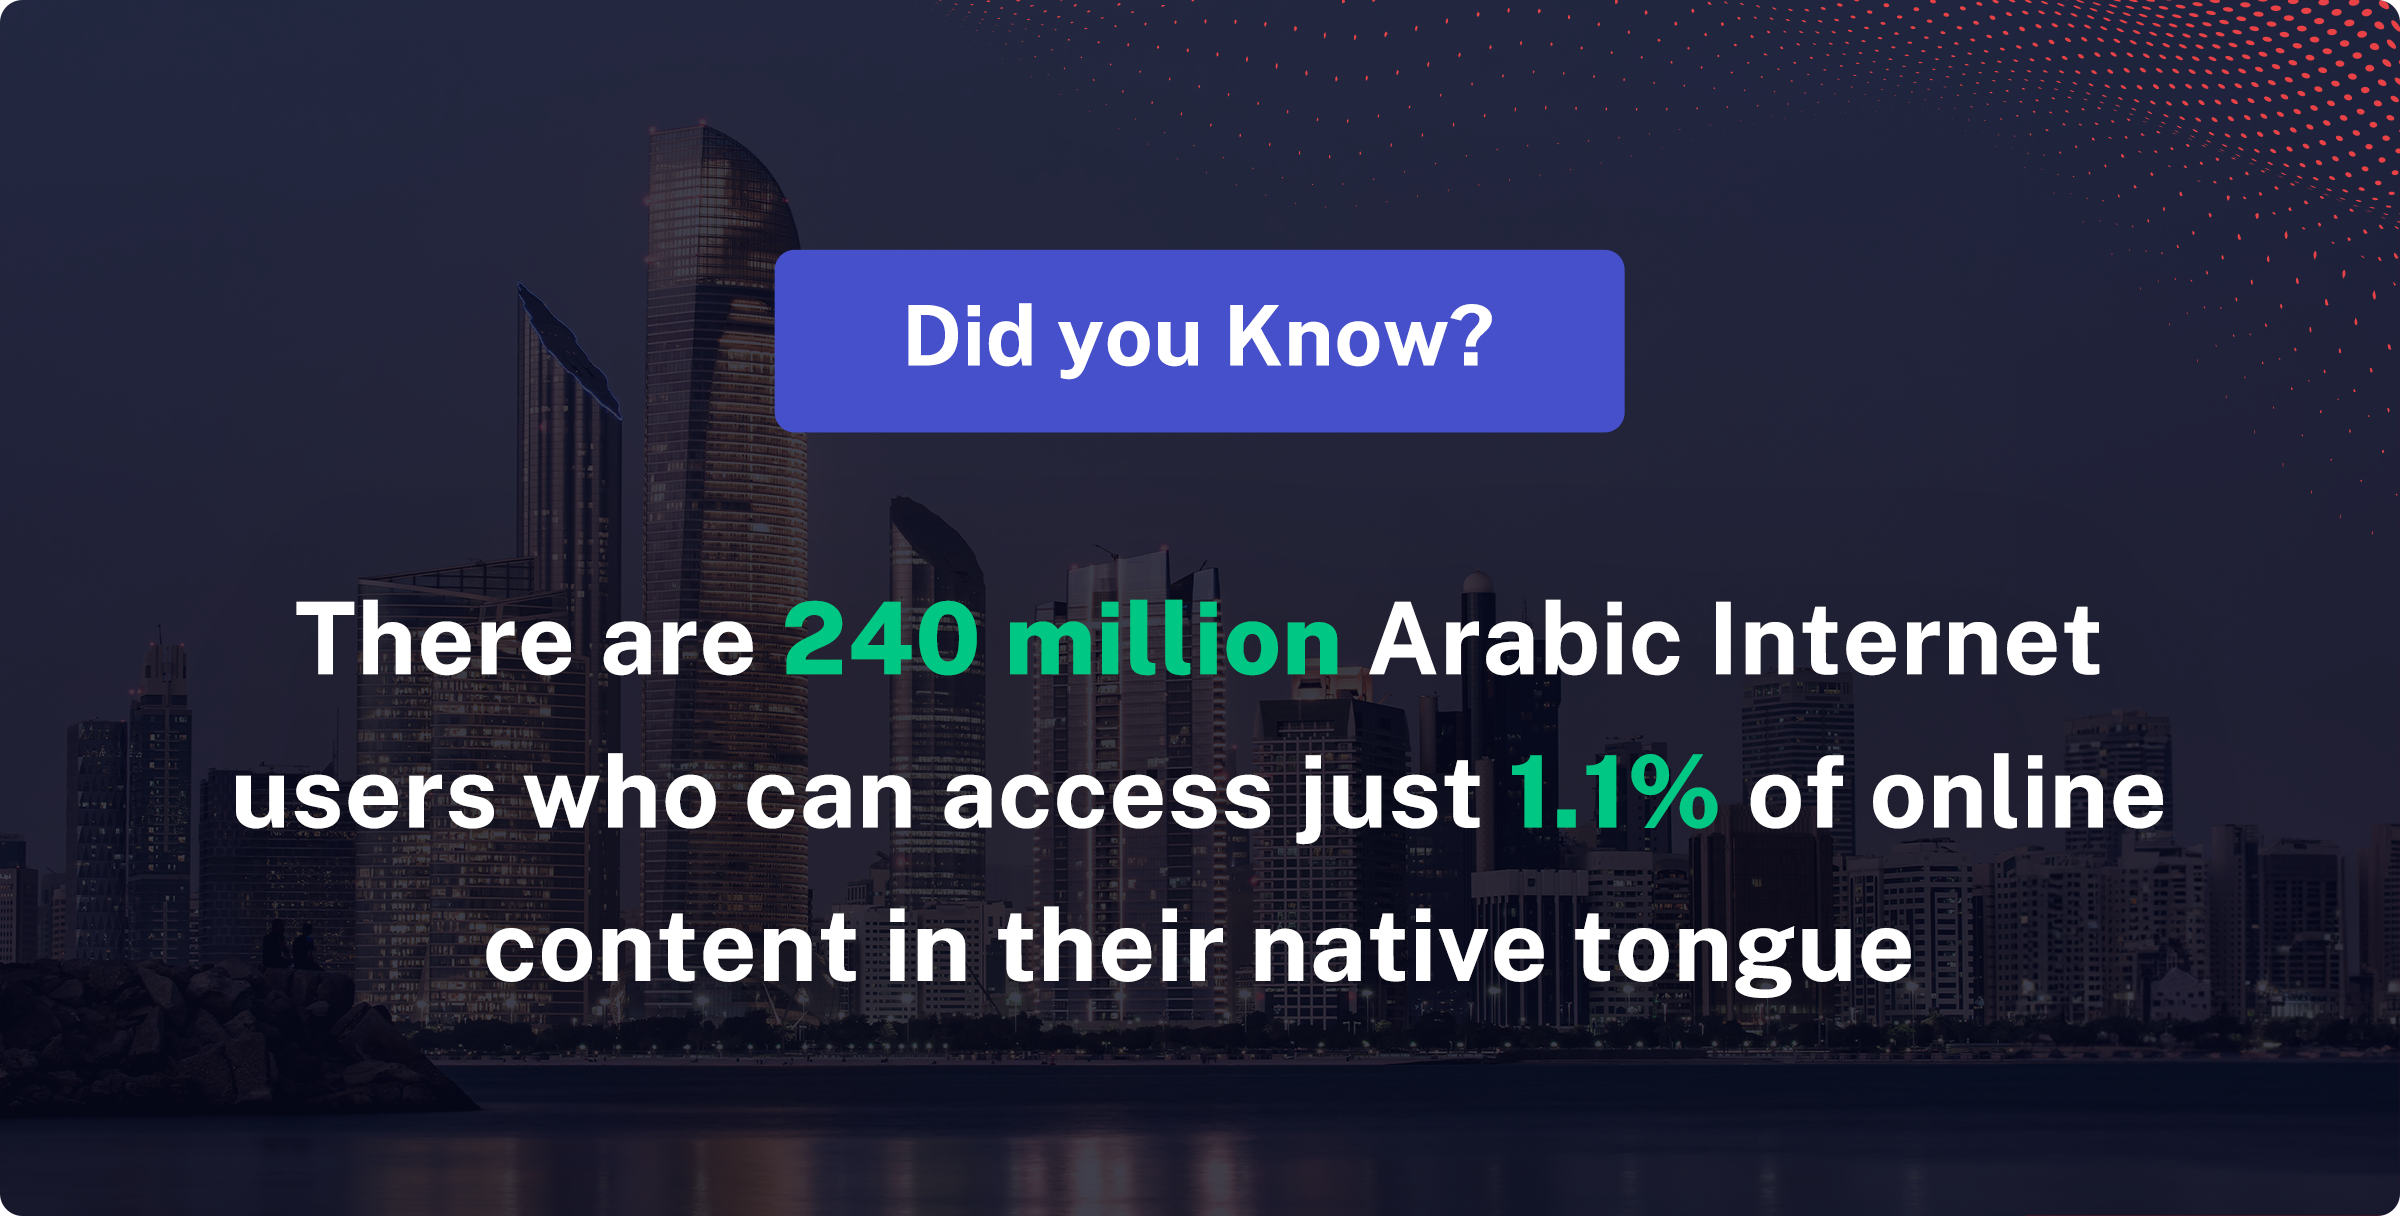 Saudi_Arabia_iOS_user_acquisition_local_content